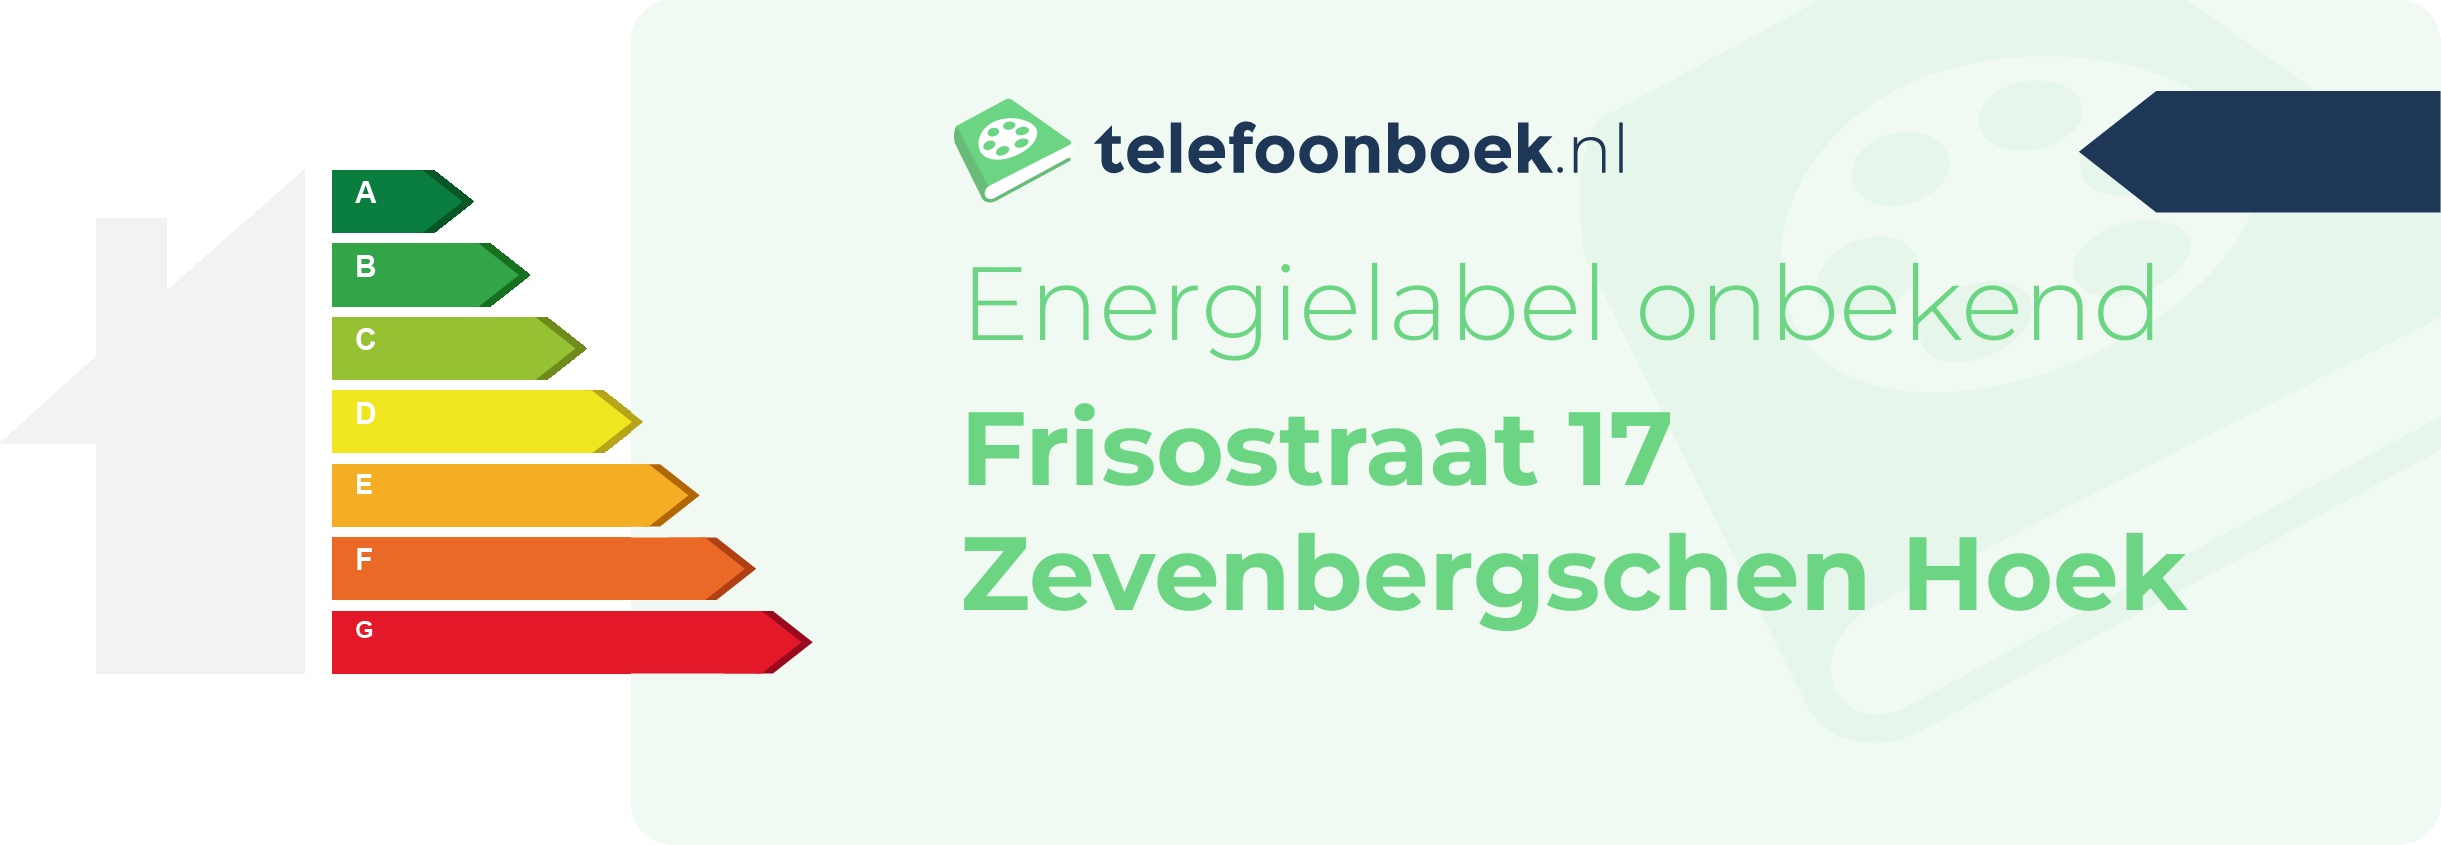 Energielabel Frisostraat 17 Zevenbergschen Hoek